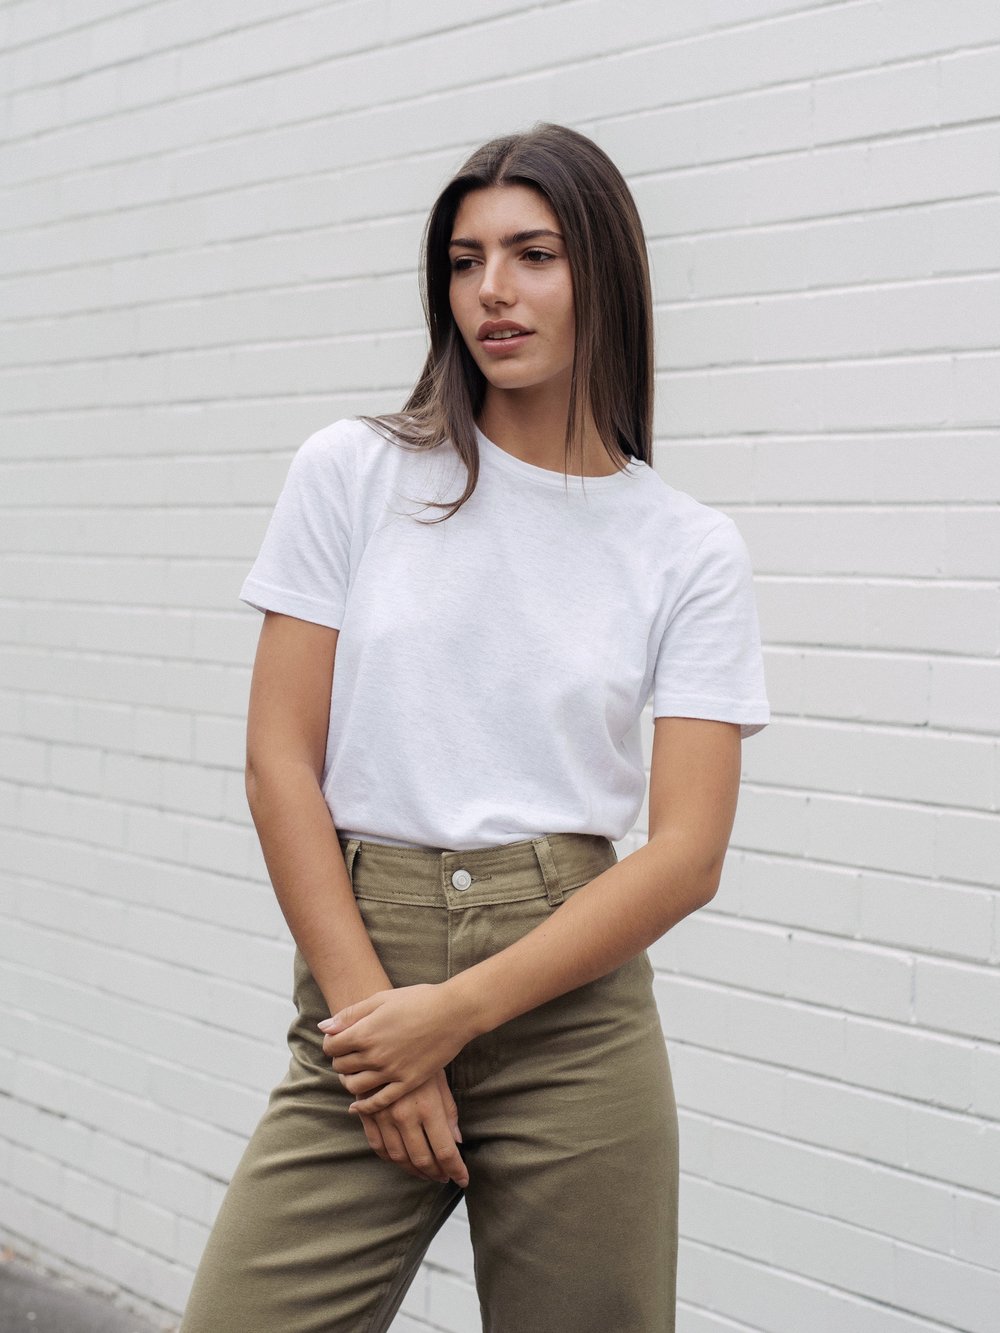 Women's Hemp T-Shirt – White | Sustainable & Ethical Tees and Basics Hemp Clothing Australia